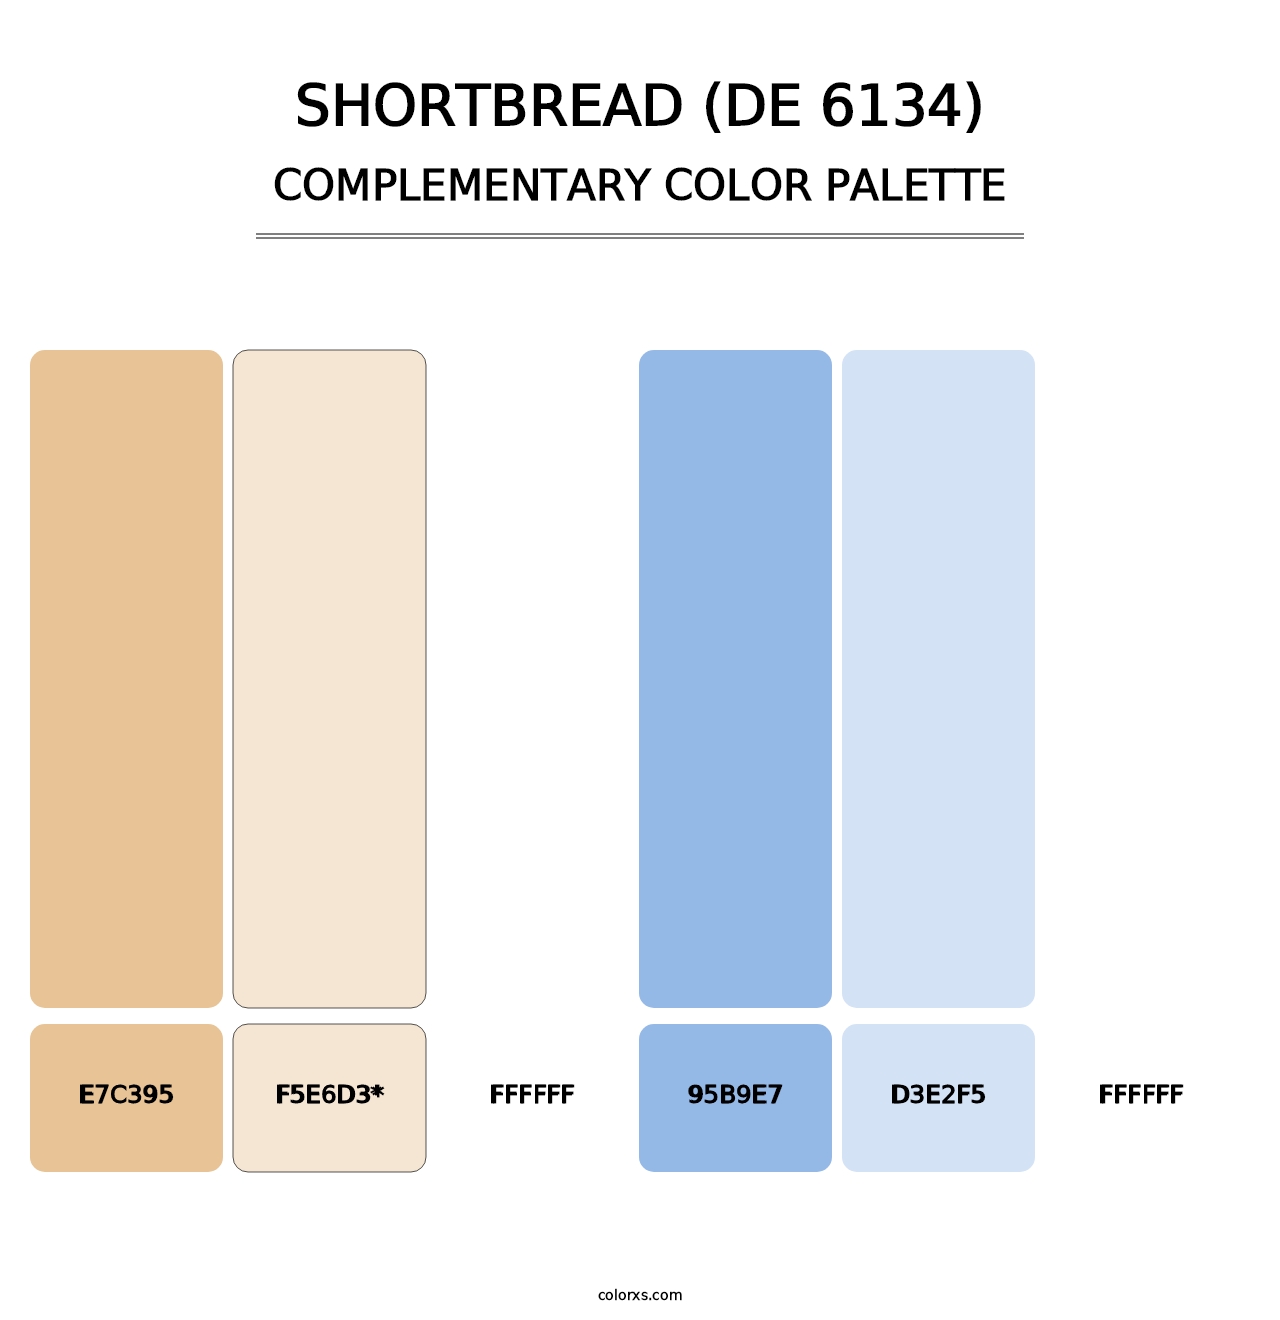 Shortbread (DE 6134) - Complementary Color Palette